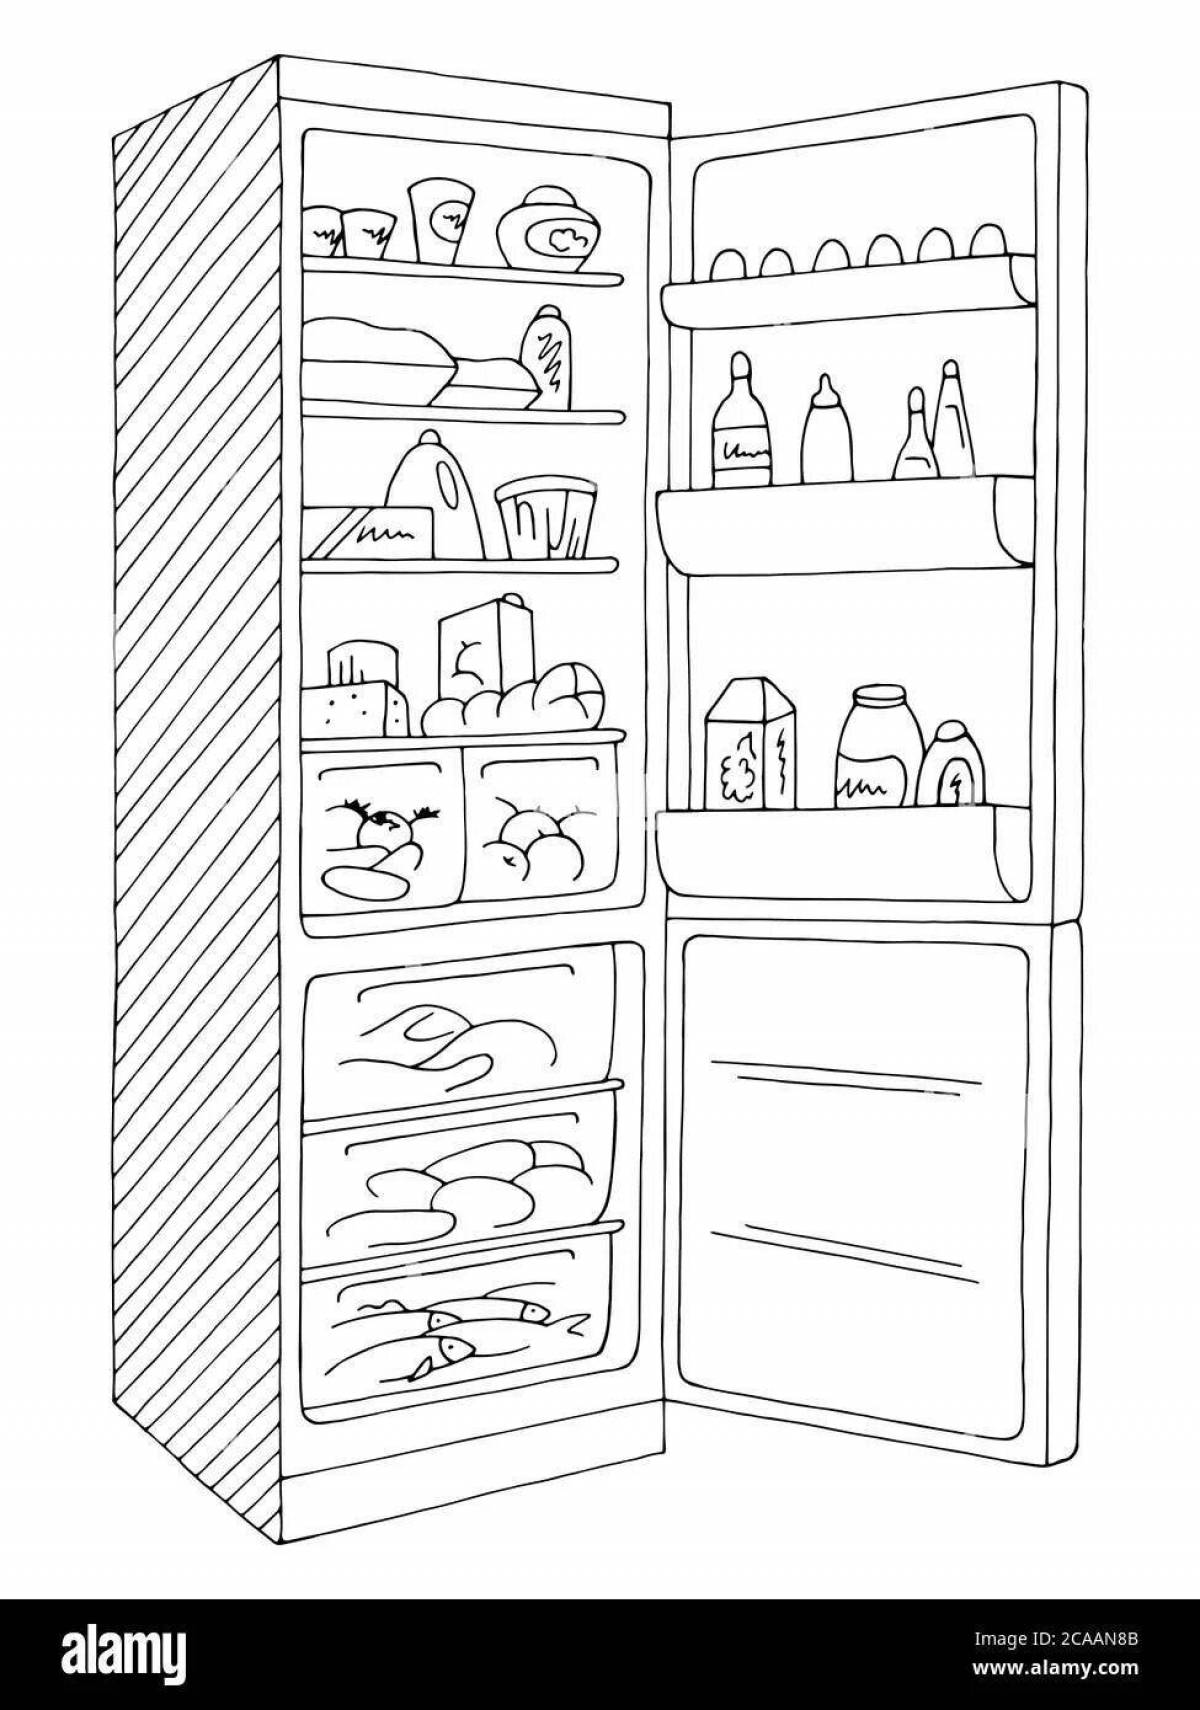 Увлекательная раскраска «пустой холодильник»